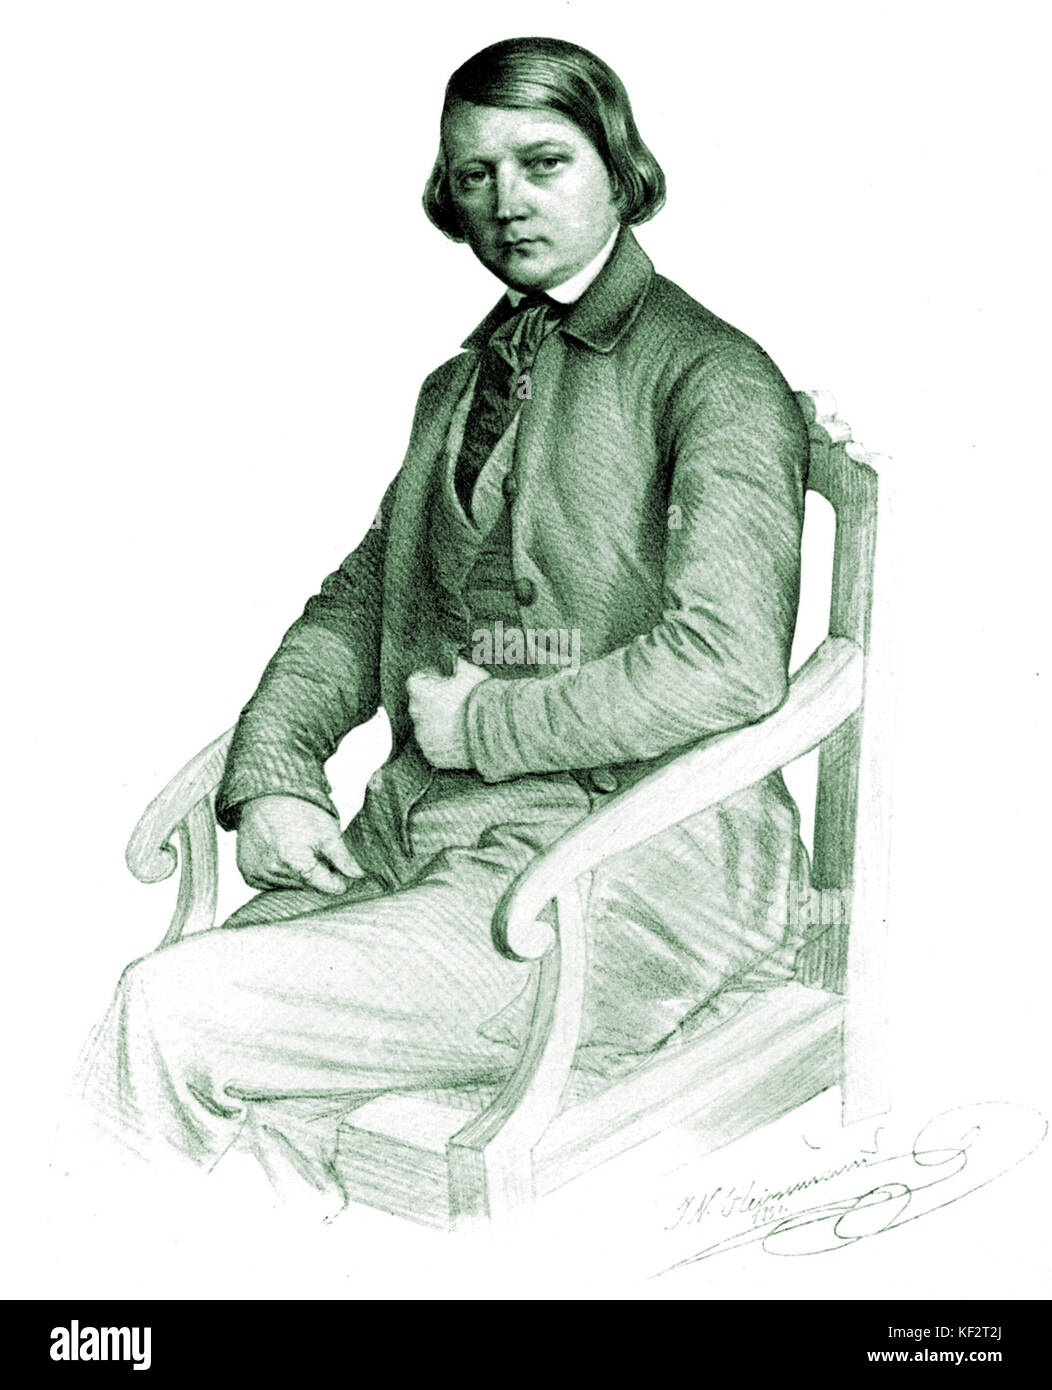 Robert Schumann - portrait de compositeur allemand par J N Heinemann. 1810-1856 Banque D'Images